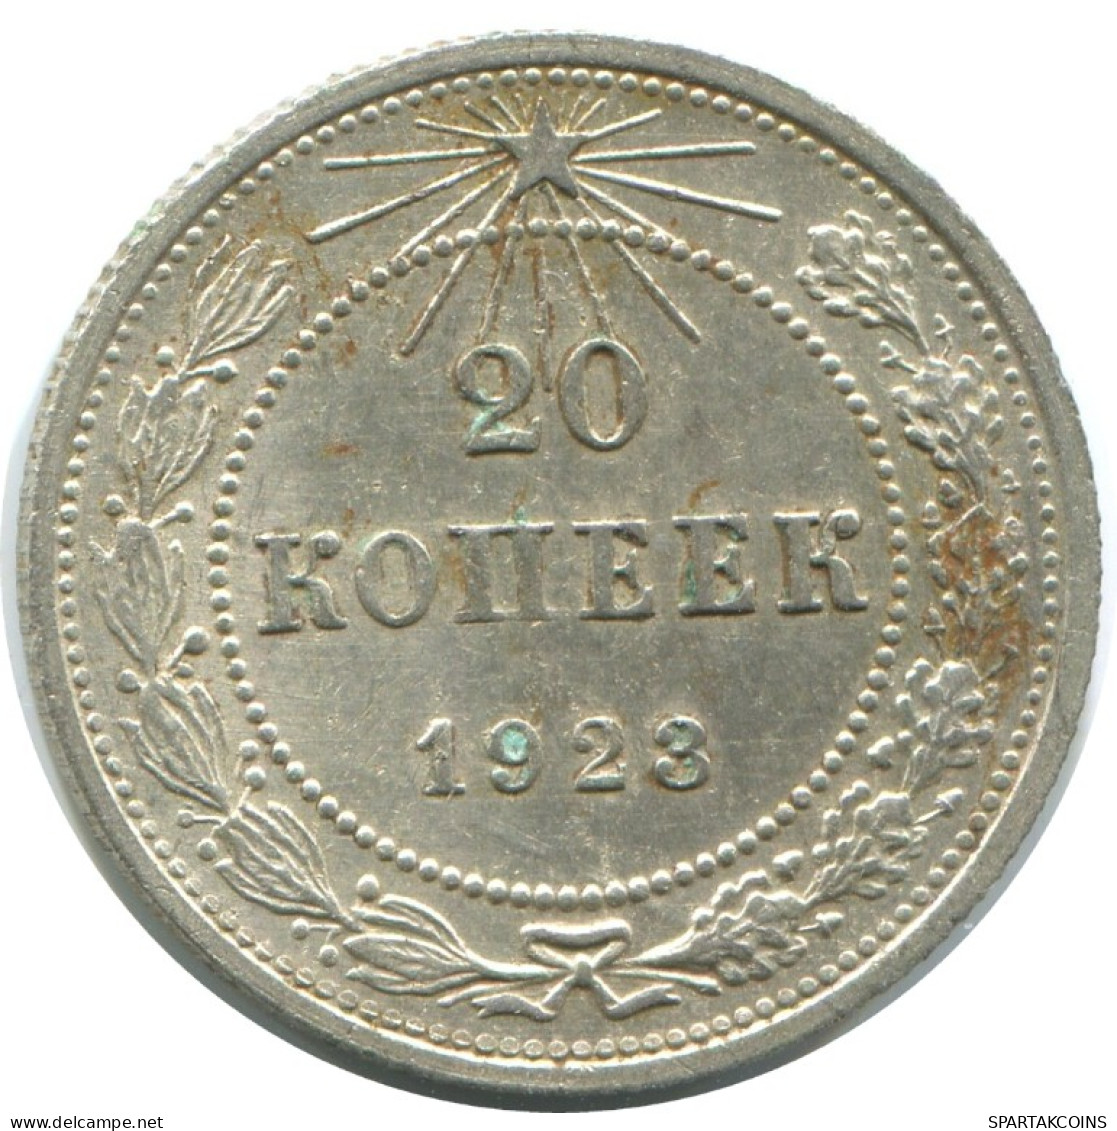 20 KOPEKS 1923 RUSSIA RSFSR SILVER Coin HIGH GRADE #AF577.4.U.A - Rusland